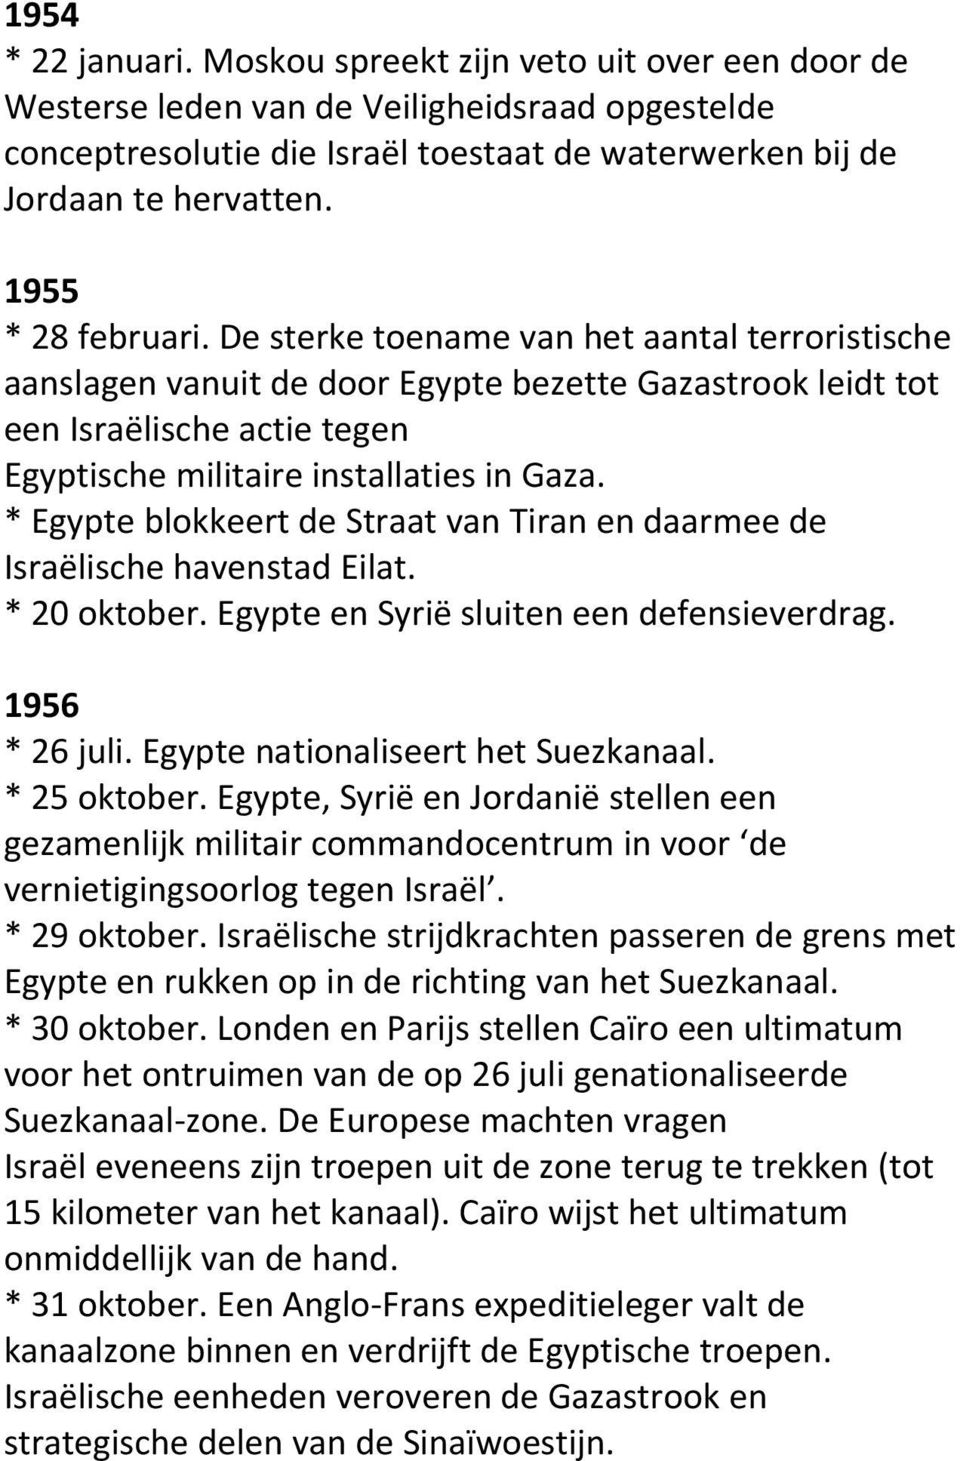 * Egypte blokkeert de Straat van Tiran en daarmee de Israëlische havenstad Eilat. * 20 oktober. Egypte en Syrië sluiten een defensieverdrag. 1956 * 26 juli. Egypte nationaliseert het Suezkanaal.